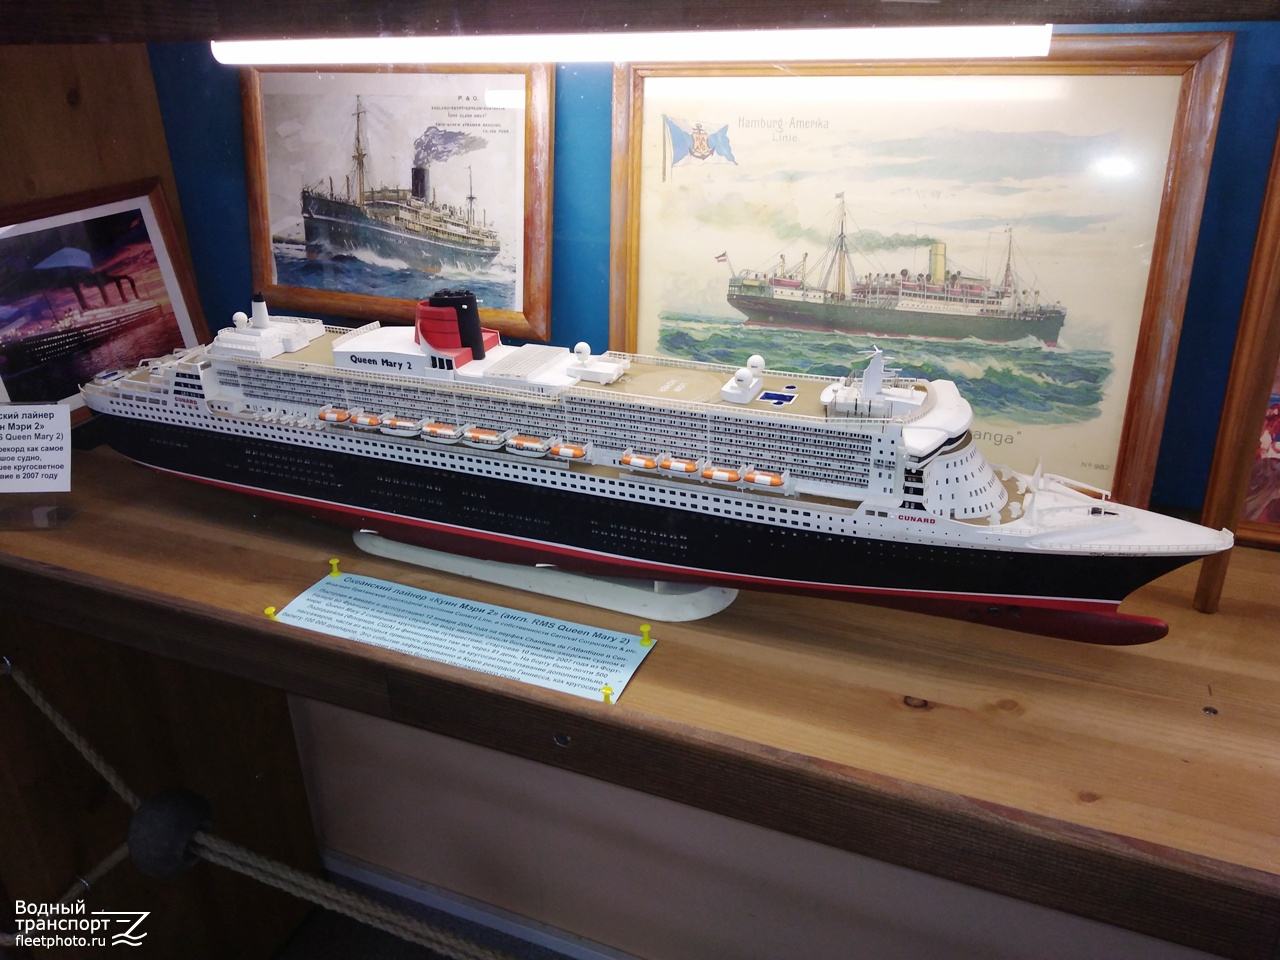 Queen Mary 2. Модели гражданских судов